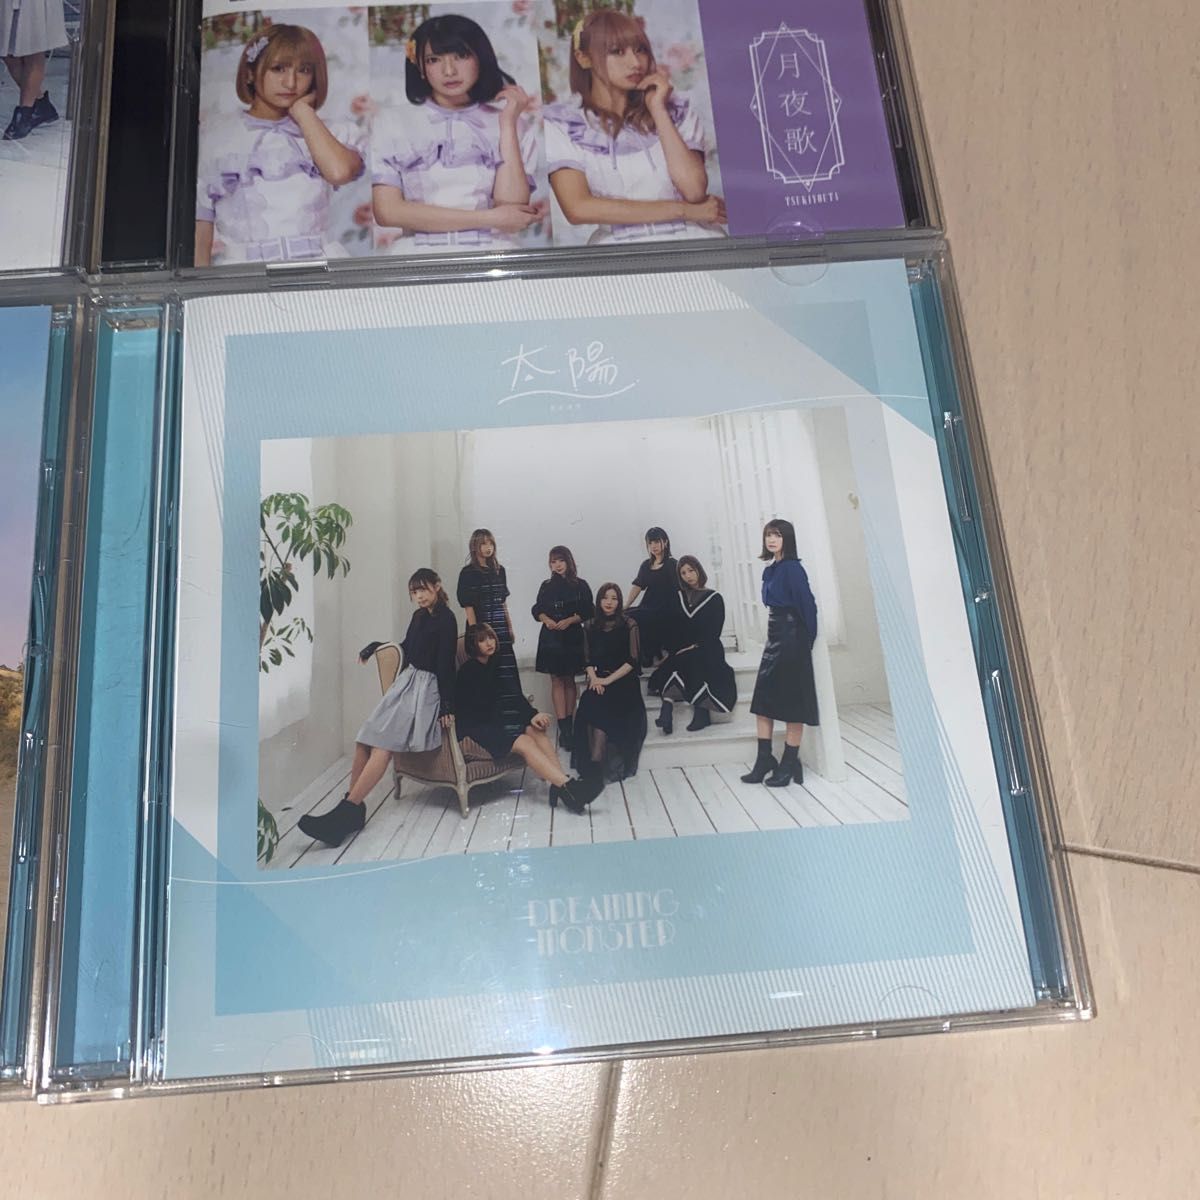 【中古品】DREAMING MONSTER CD 9枚セット